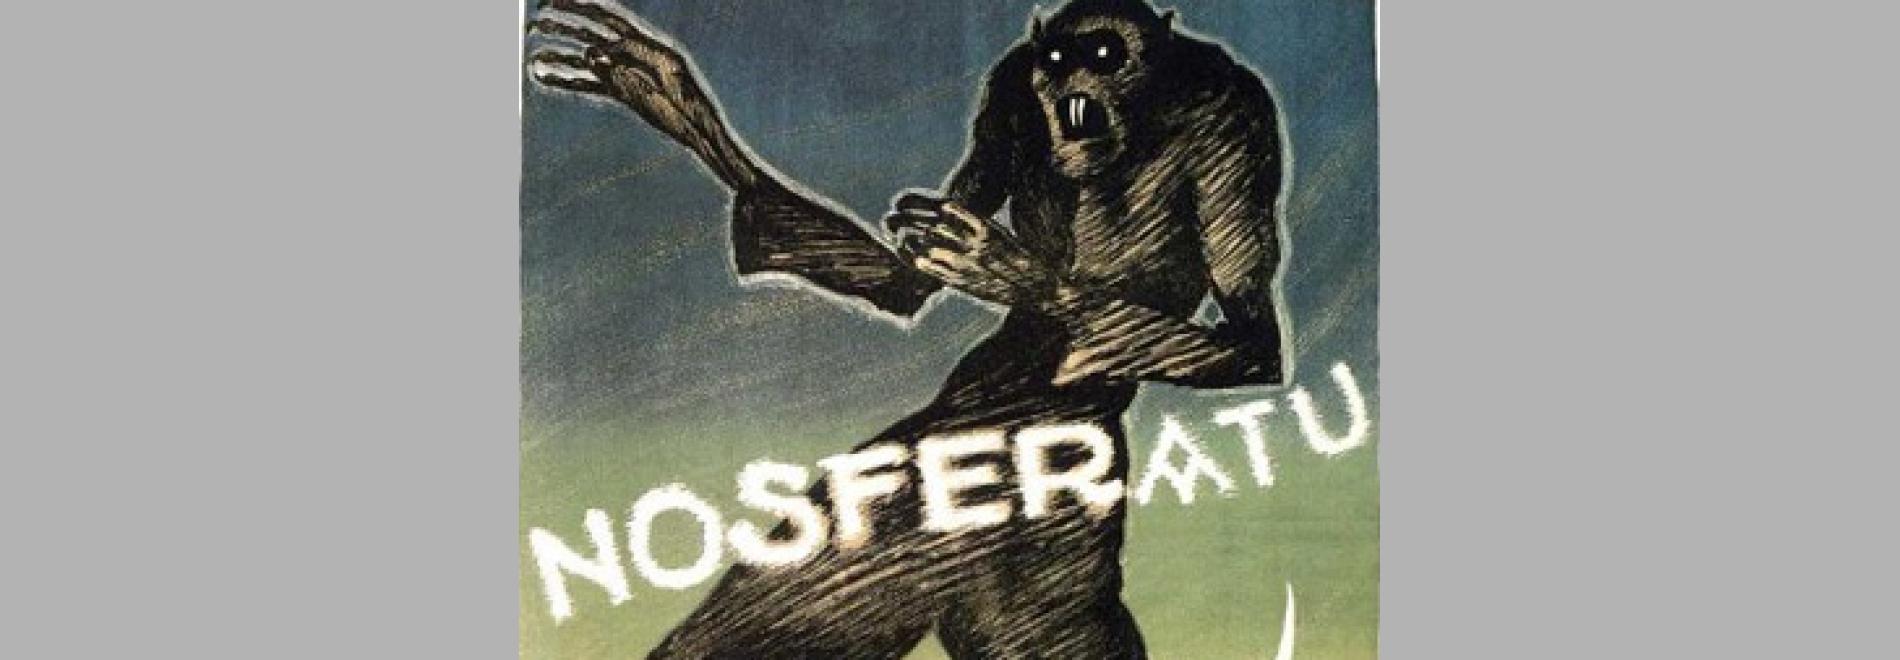 Nosferatu, Eine Symphonie des Grauens (F.W. Murnau, 1921)